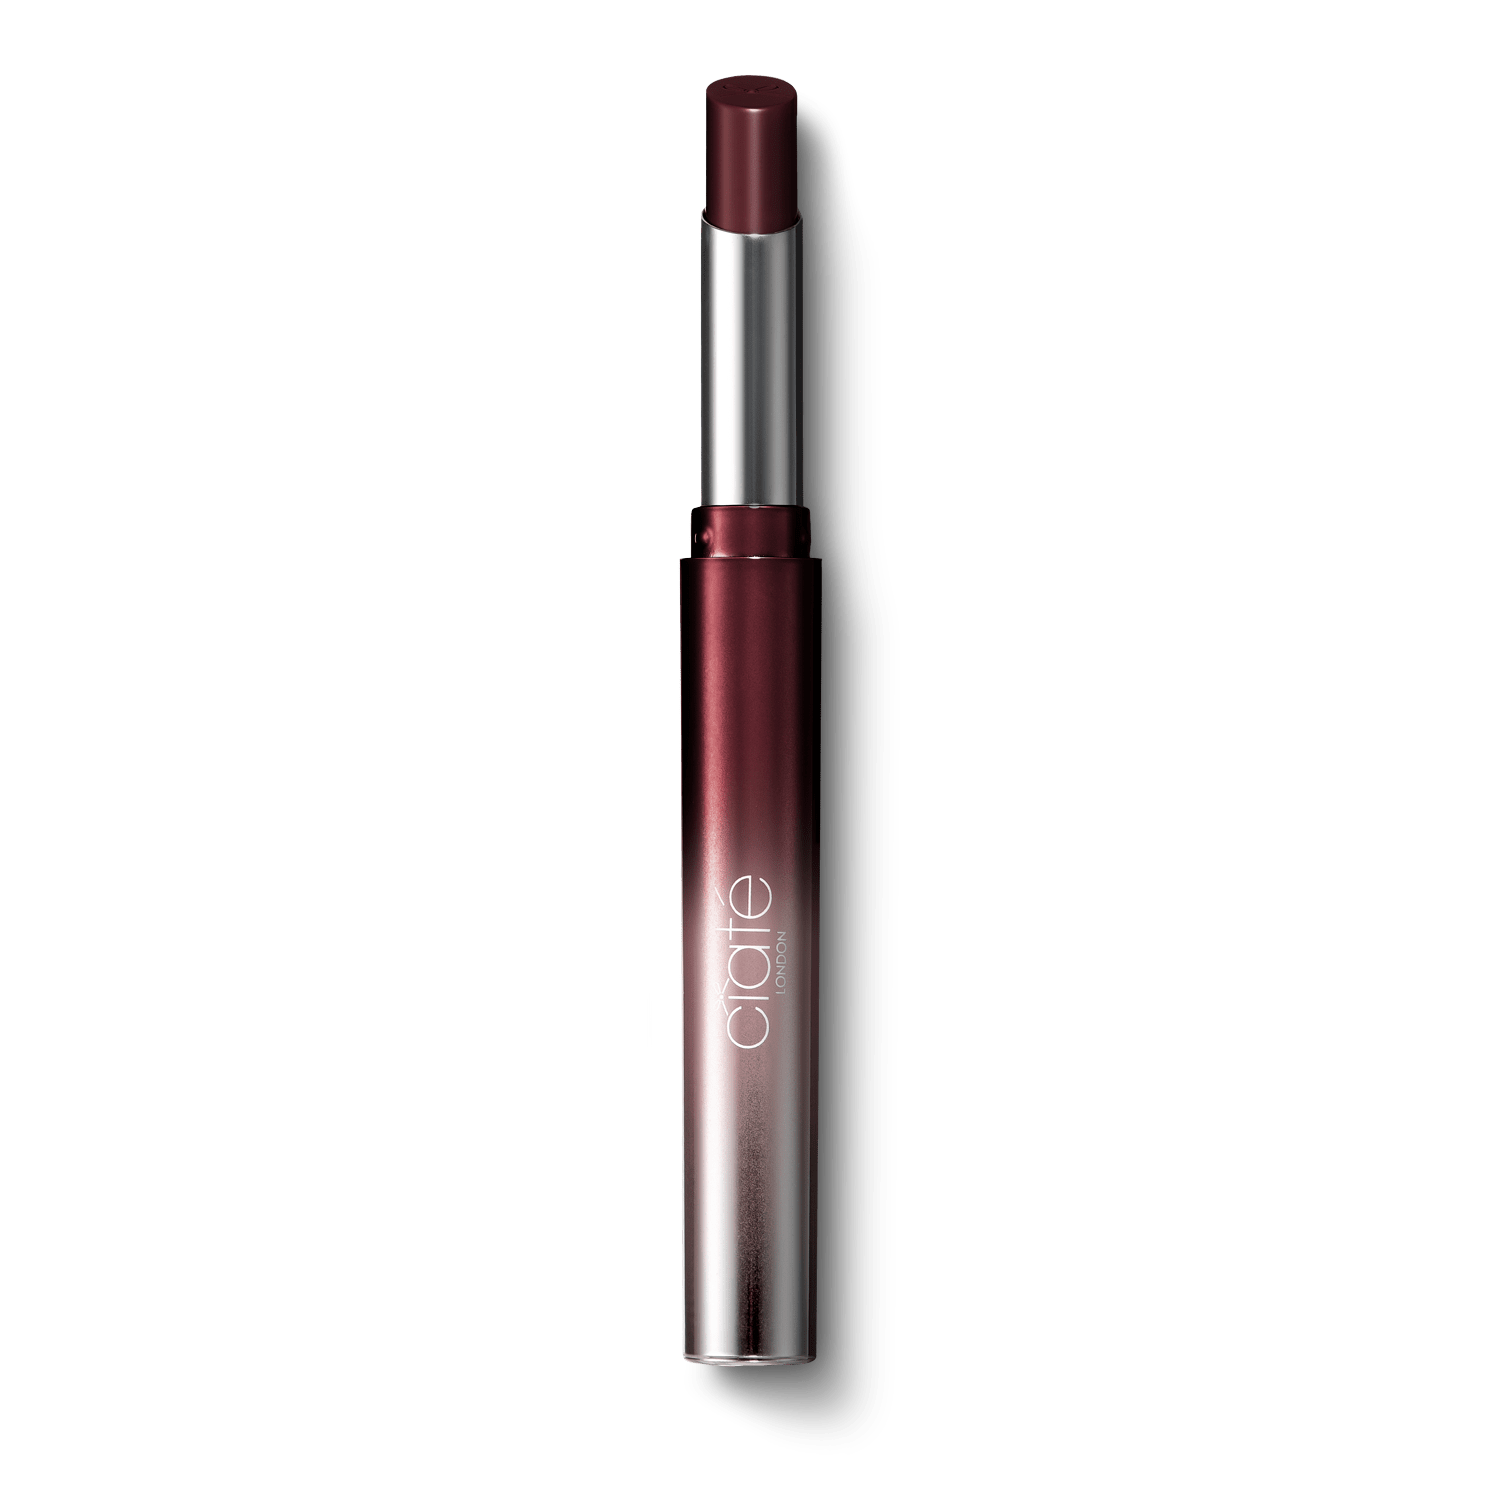 Wonderwand Lipstick Royal - Rich Plum Colour Cosmetics Ciaté London